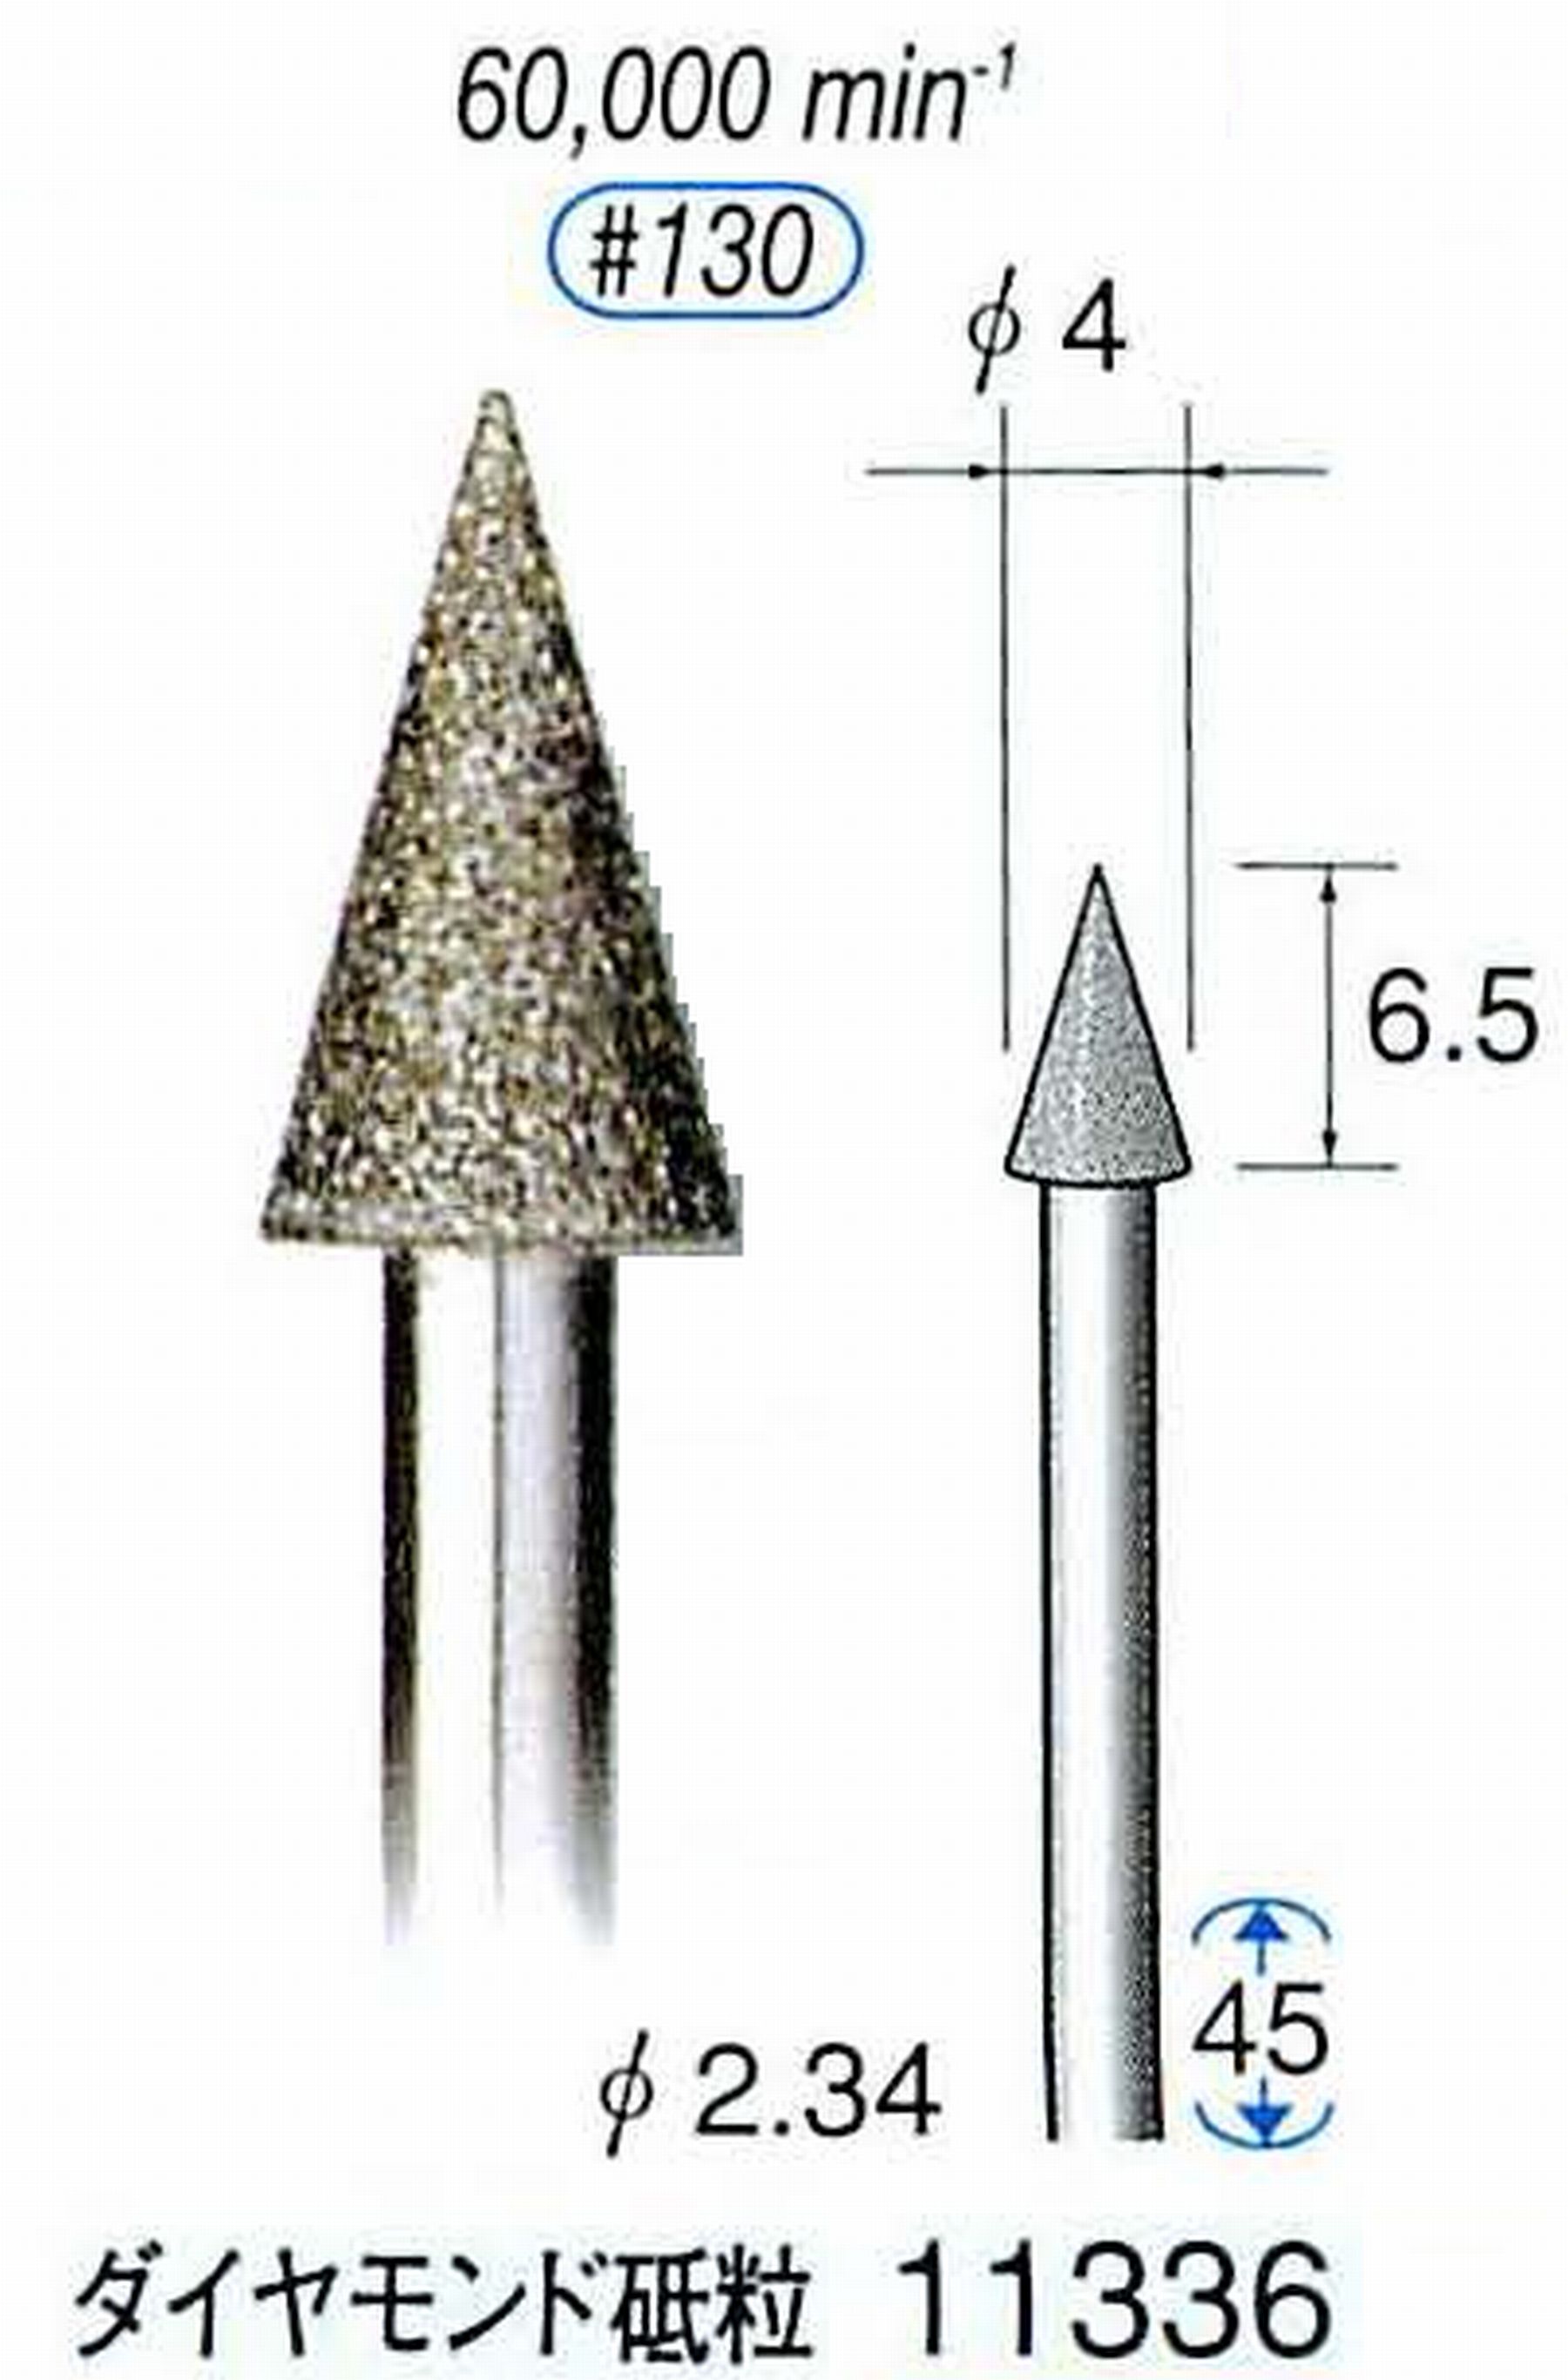 ナカニシ/NAKANISHI 電着ダイヤモンドバー ダイヤモンド砥粒 軸径(シャンク)φ2.34mm 11336